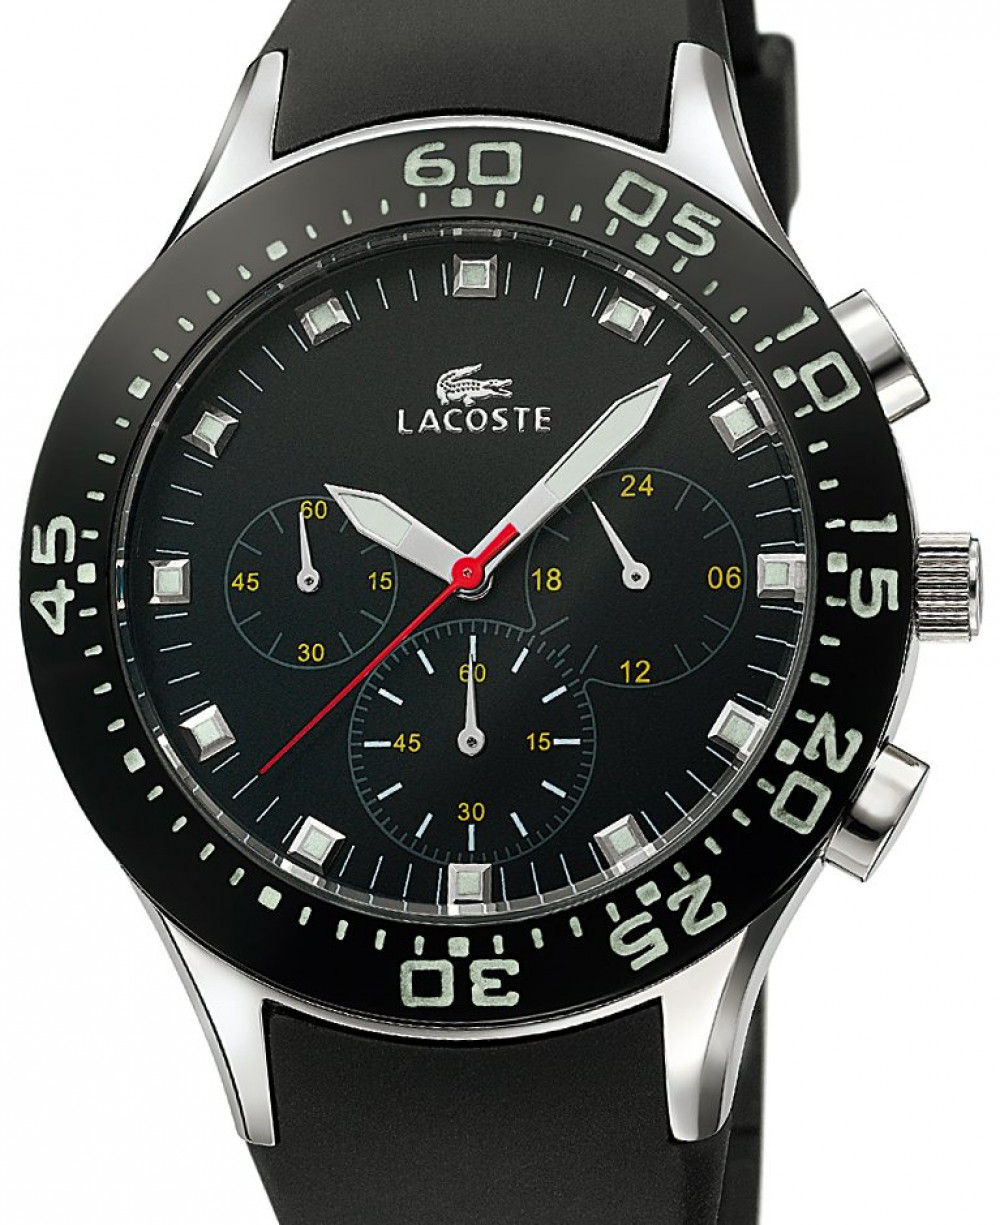 Zegarek firmy Lacoste, model Sport 1500 C23